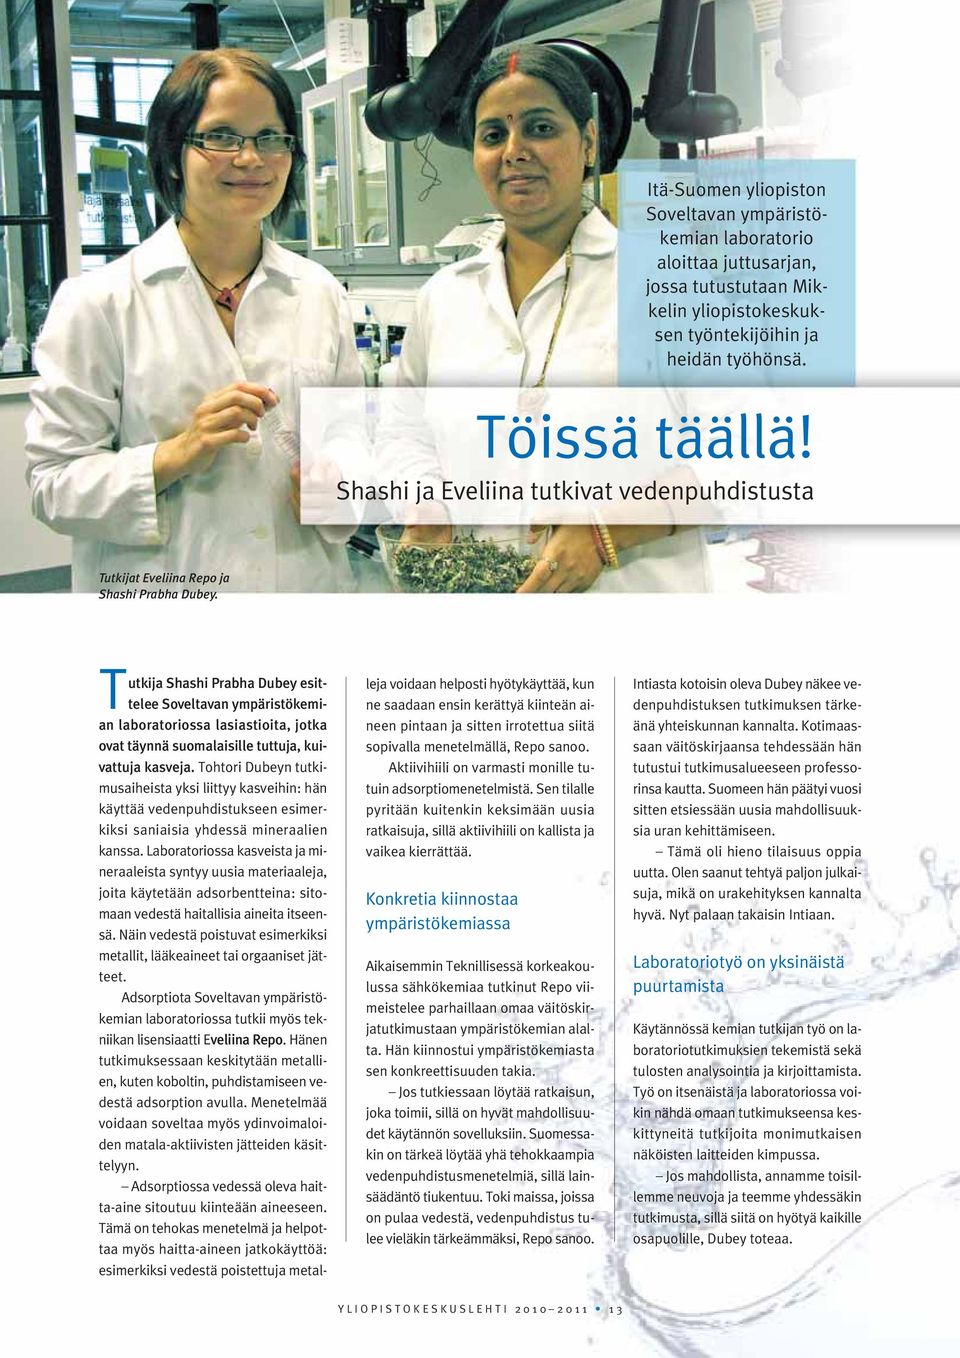 Tutkija Shashi Prabha Dubey esittelee Soveltavan ympäristökemian laboratoriossa lasiastioita, jotka ovat täynnä suomalaisille tuttuja, kuivattuja kasveja.